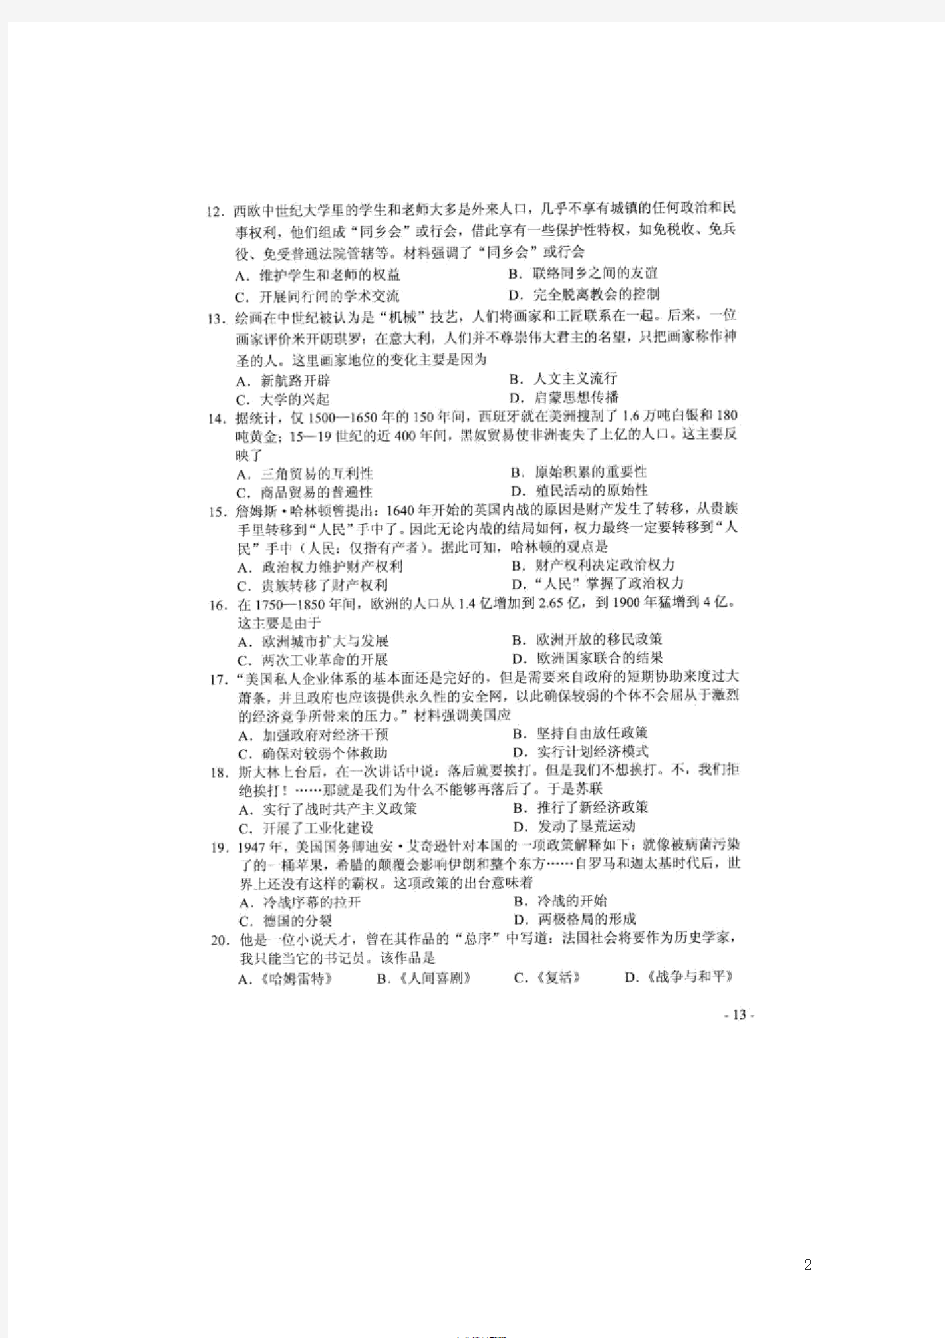 2019年河南省中考历史试卷及答案(高清图片版)